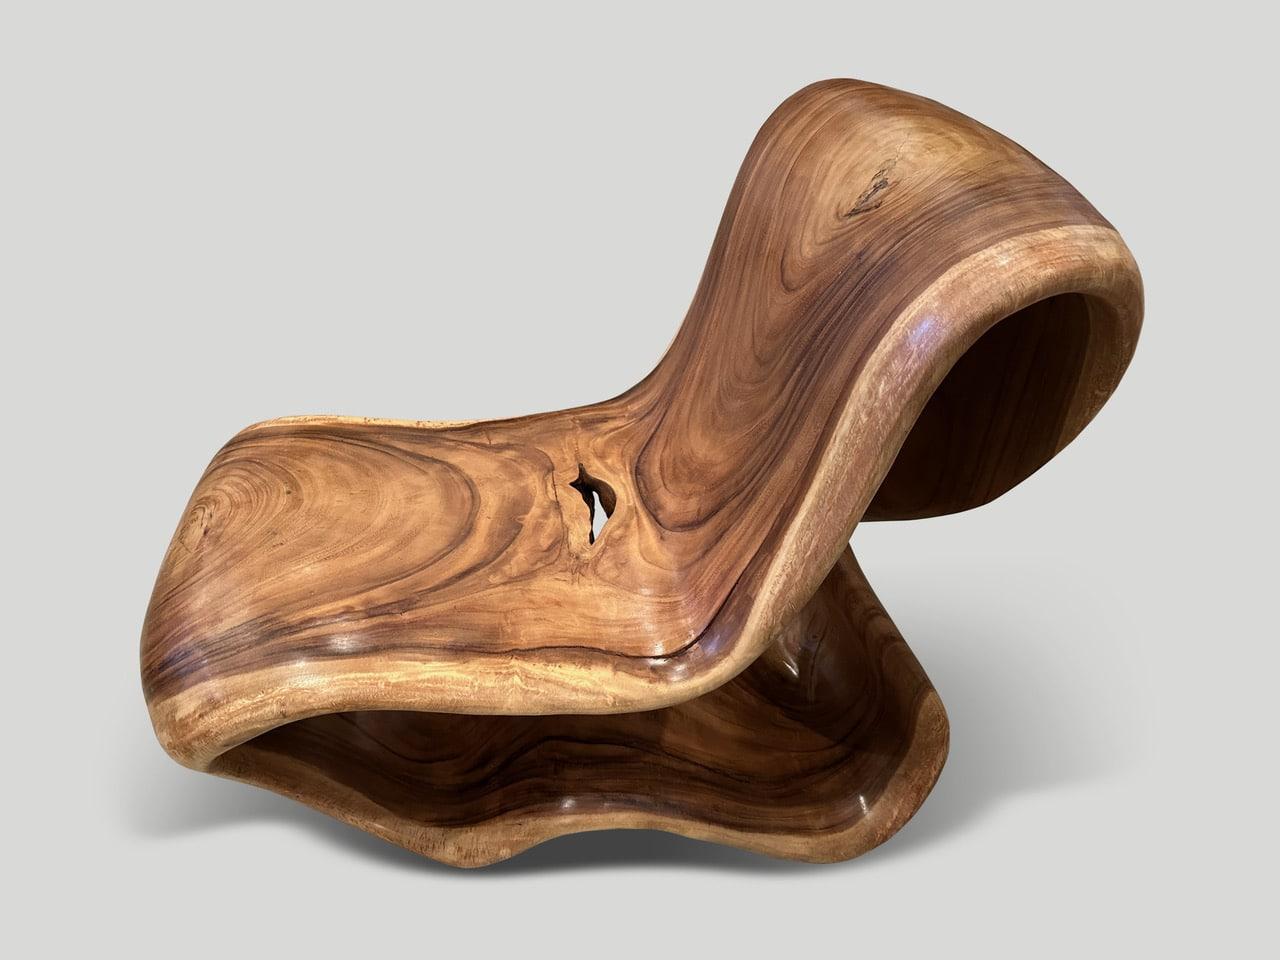 Beeindruckender, einzigartiger Stuhl, der aus einem einzigen Stück Suarholz gefertigt und nahtlos aus einem Stück Holz geschnitzt wurde. Wir haben dieses seltene Stück mit einem natürlichen Öl behandelt, das die schöne Holzmaserung zum Vorschein